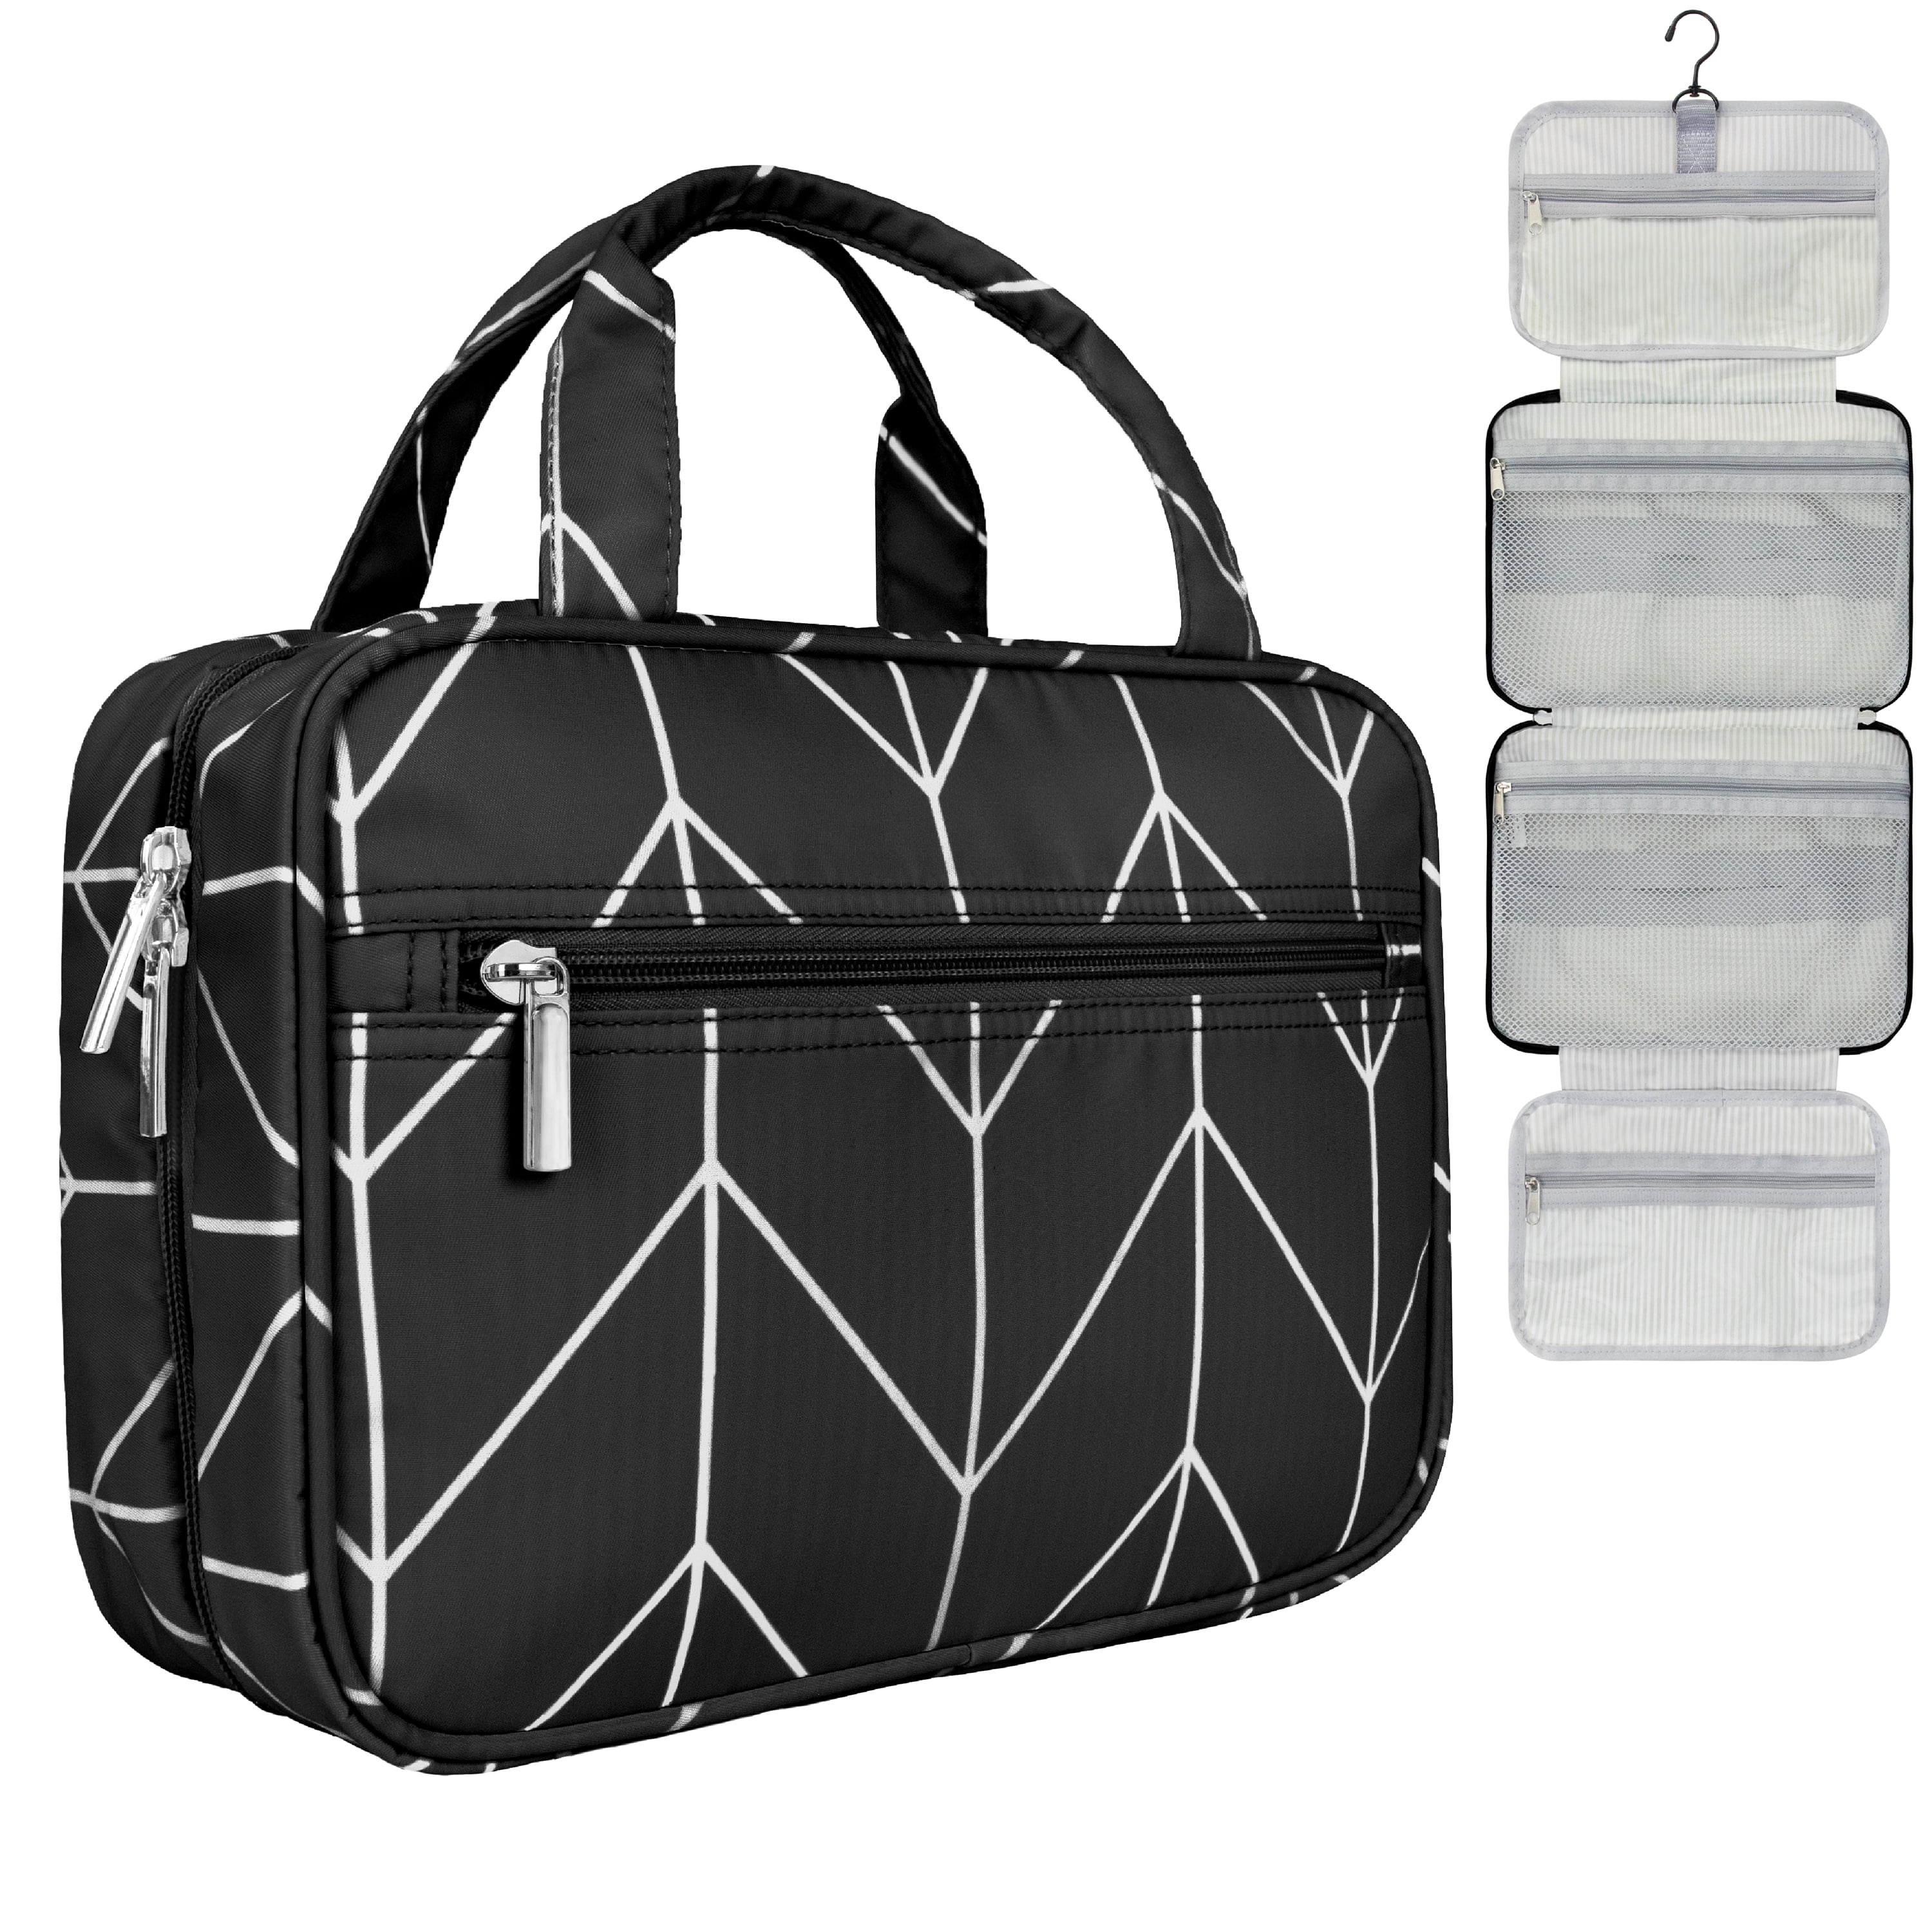 EEEkit Large Capacity Hanging Travel Toiletry Bag for Men Women, Waterproof  Makeup Organizer Bags Wash Bag Shaving Kit Cosmetic Bag for Toiletries